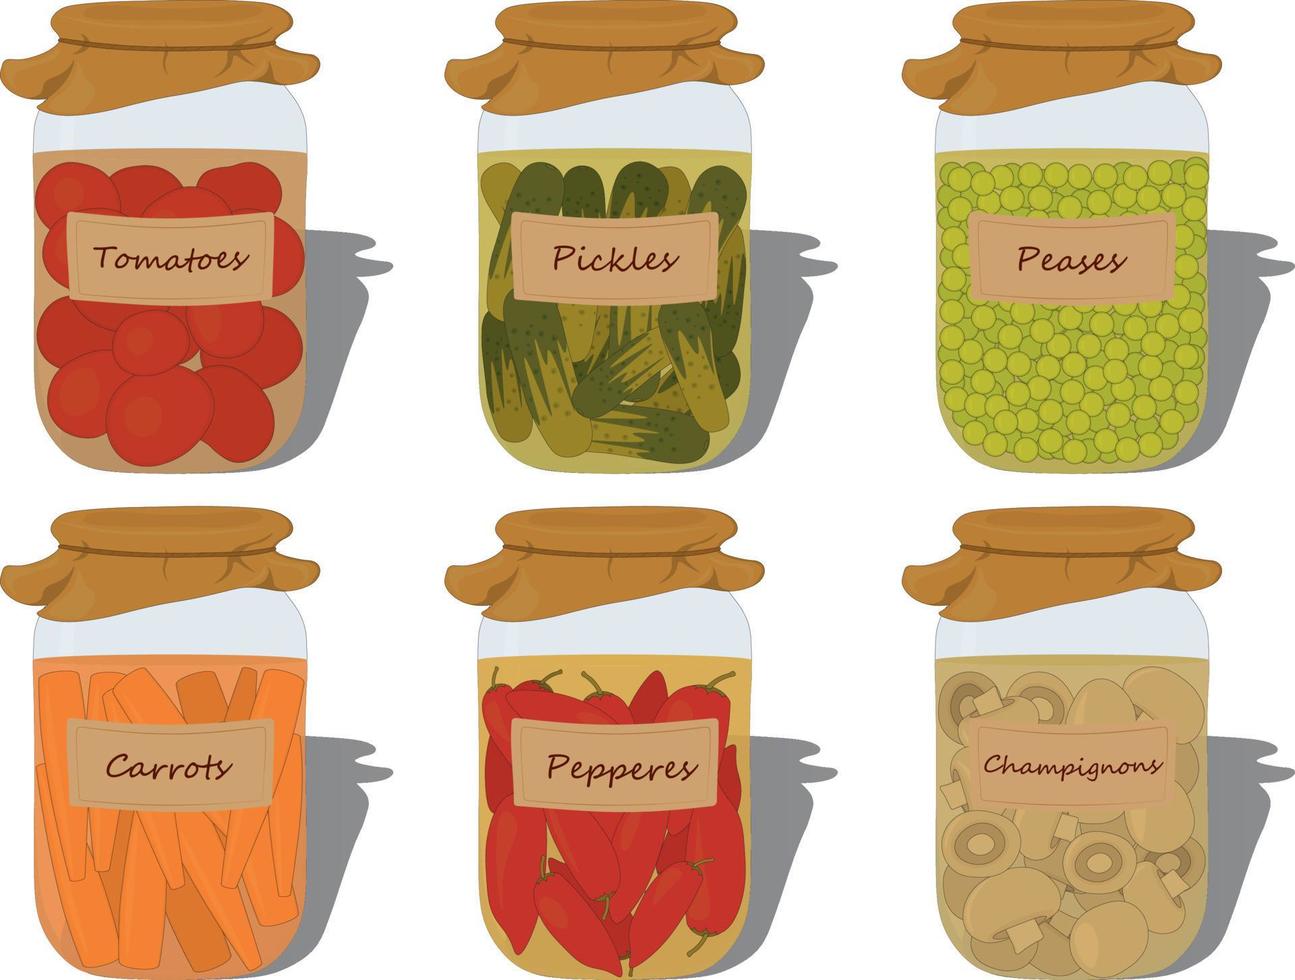 legumes conservados em ilustração vetorial de receitas de jarra de vidro vetor